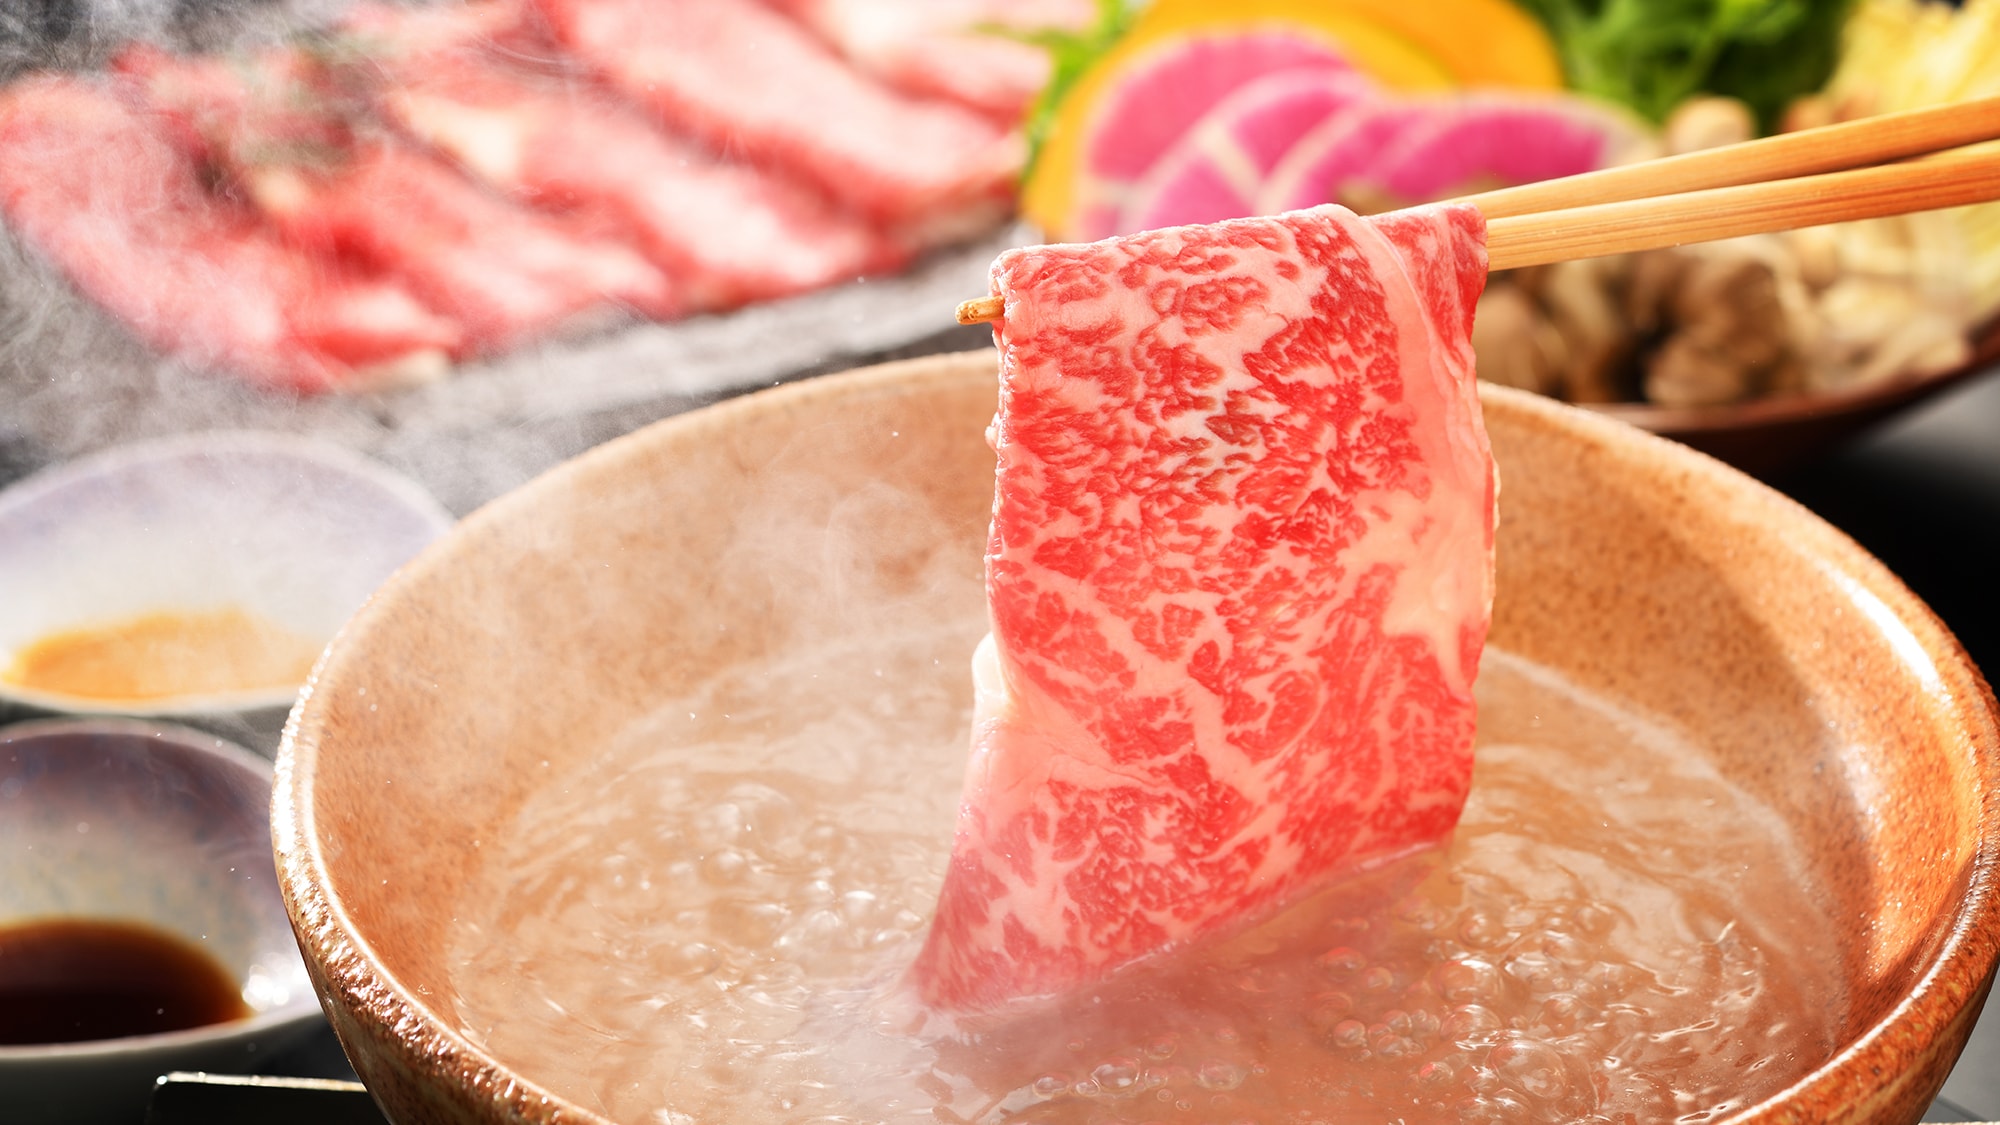 ■ 特色牛肉的涮涮锅形象 ■ 厨师精心挑选的品牌牛肉。快速沉浸在高汤中，享受肉的原汁原味